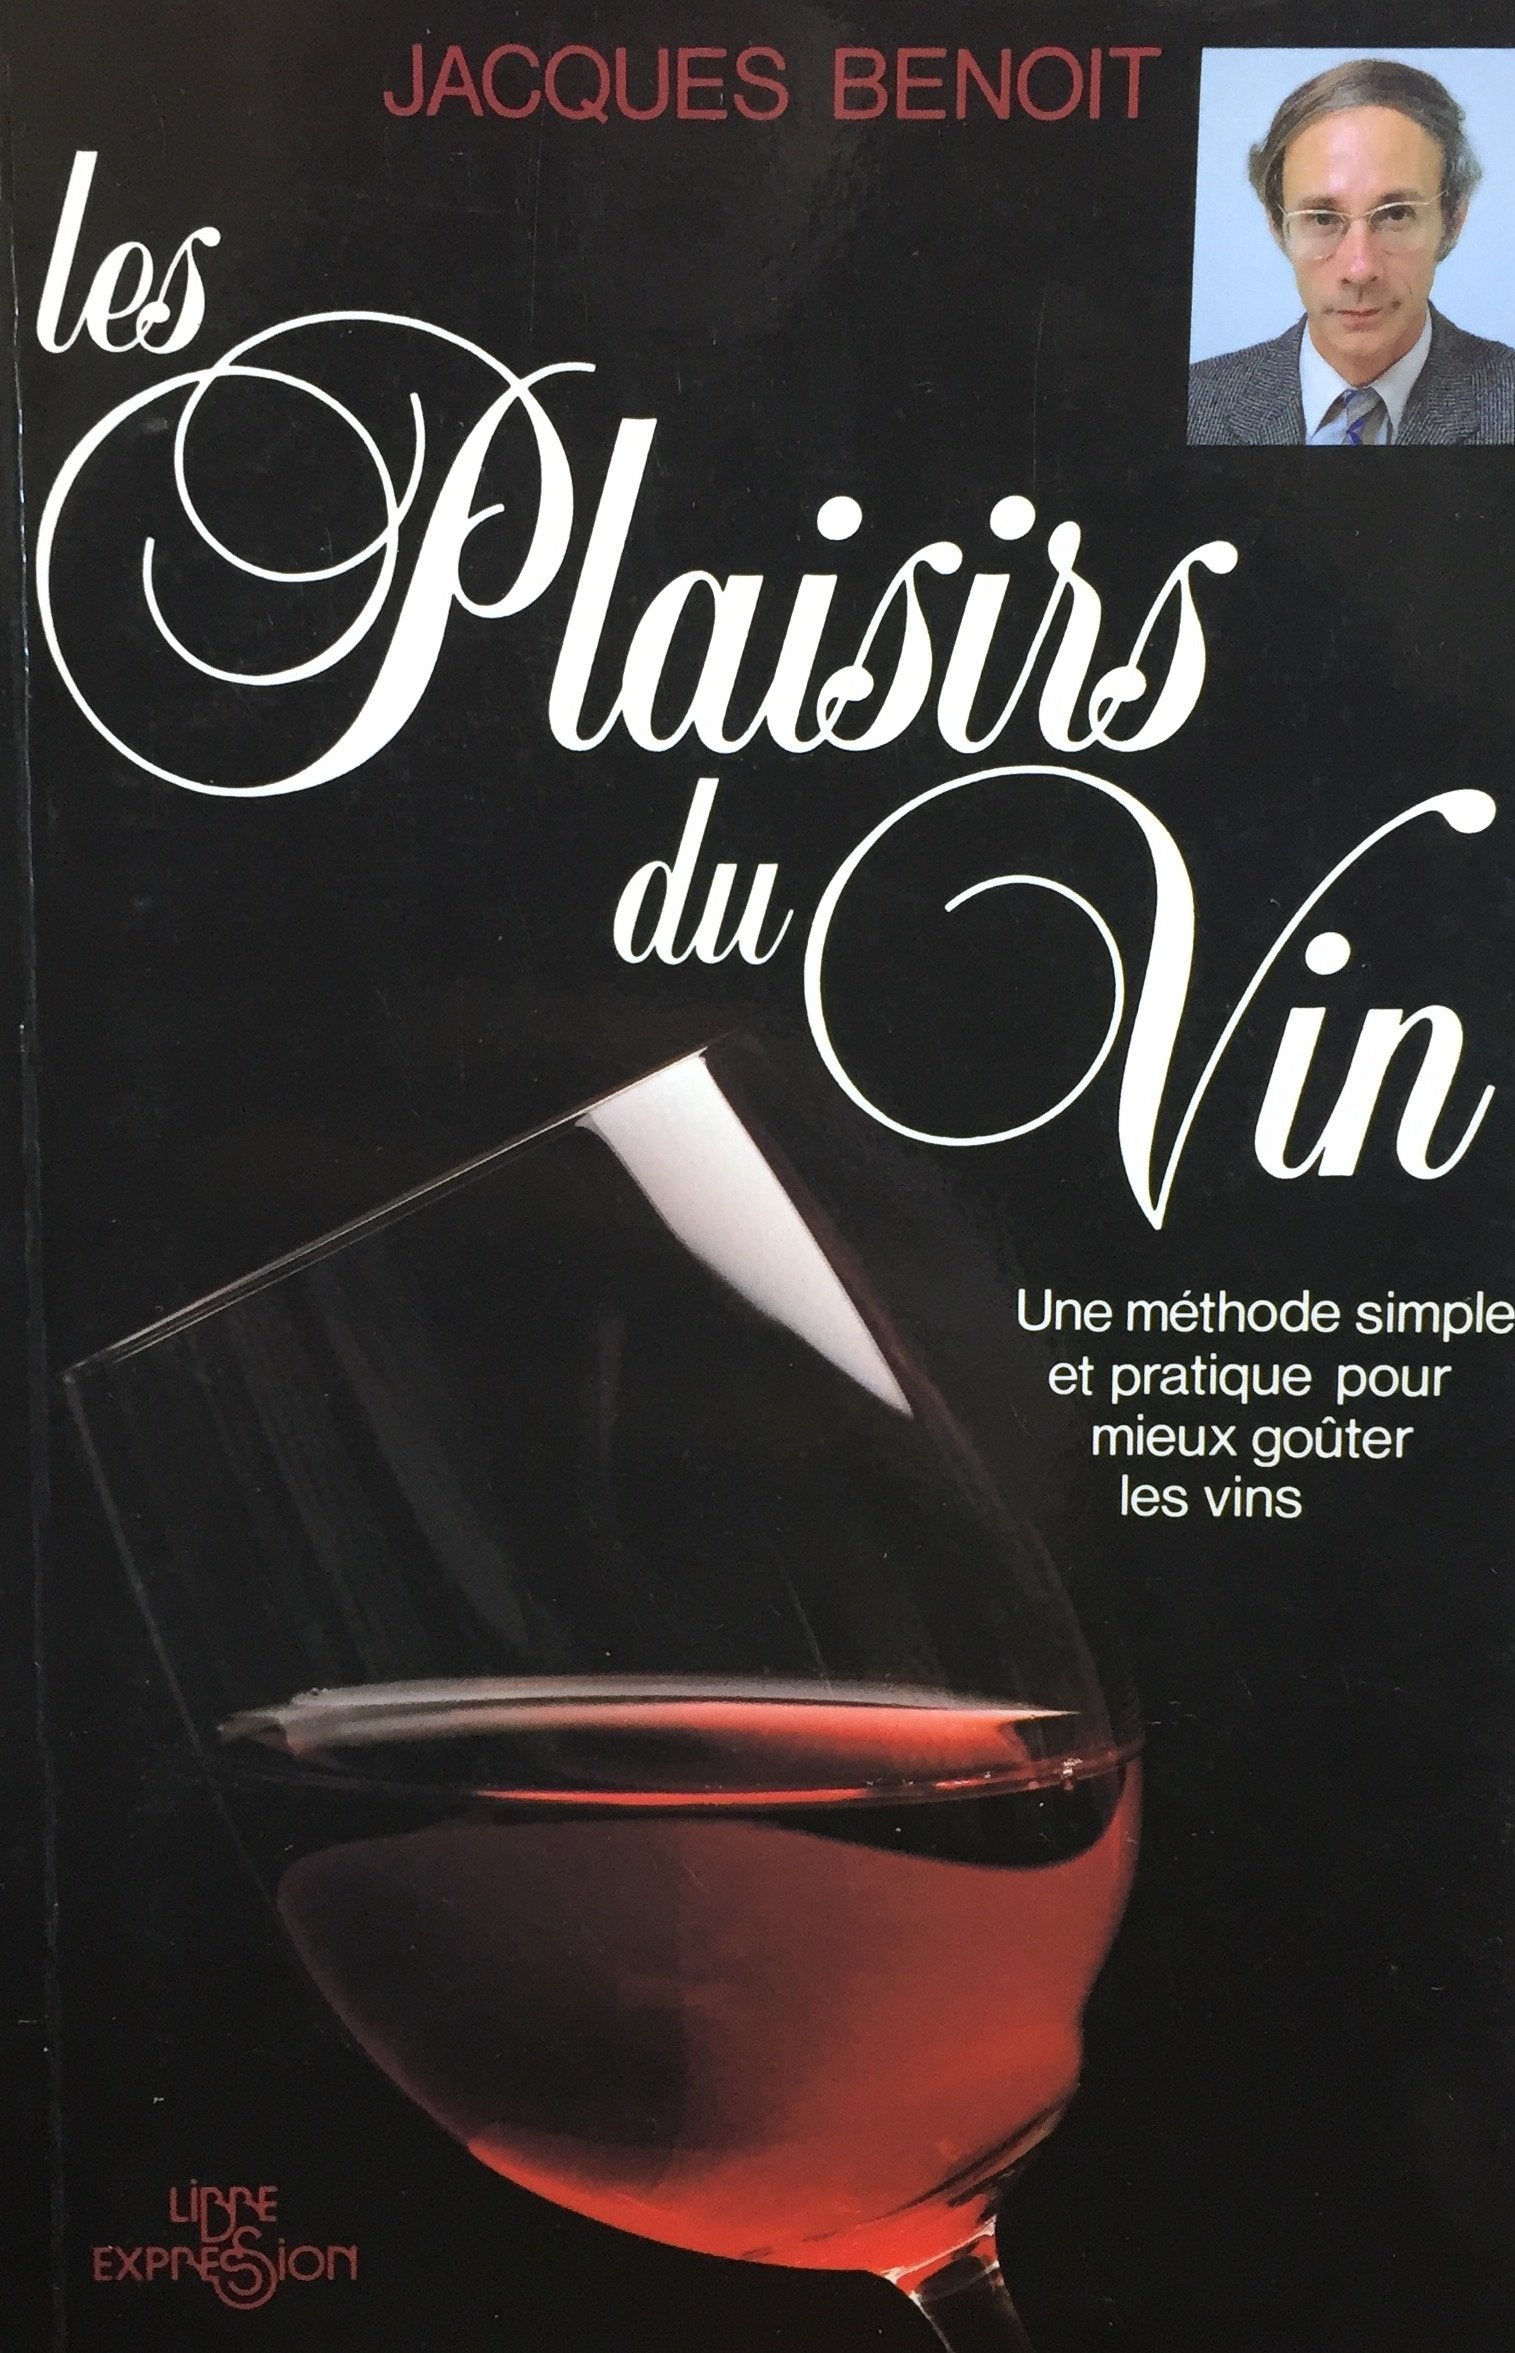 Livre ISBN 2891112628 Les plaisirs du vin : une méthode simple et pratique pour mieux goûter les vins (Jacques Benoit)